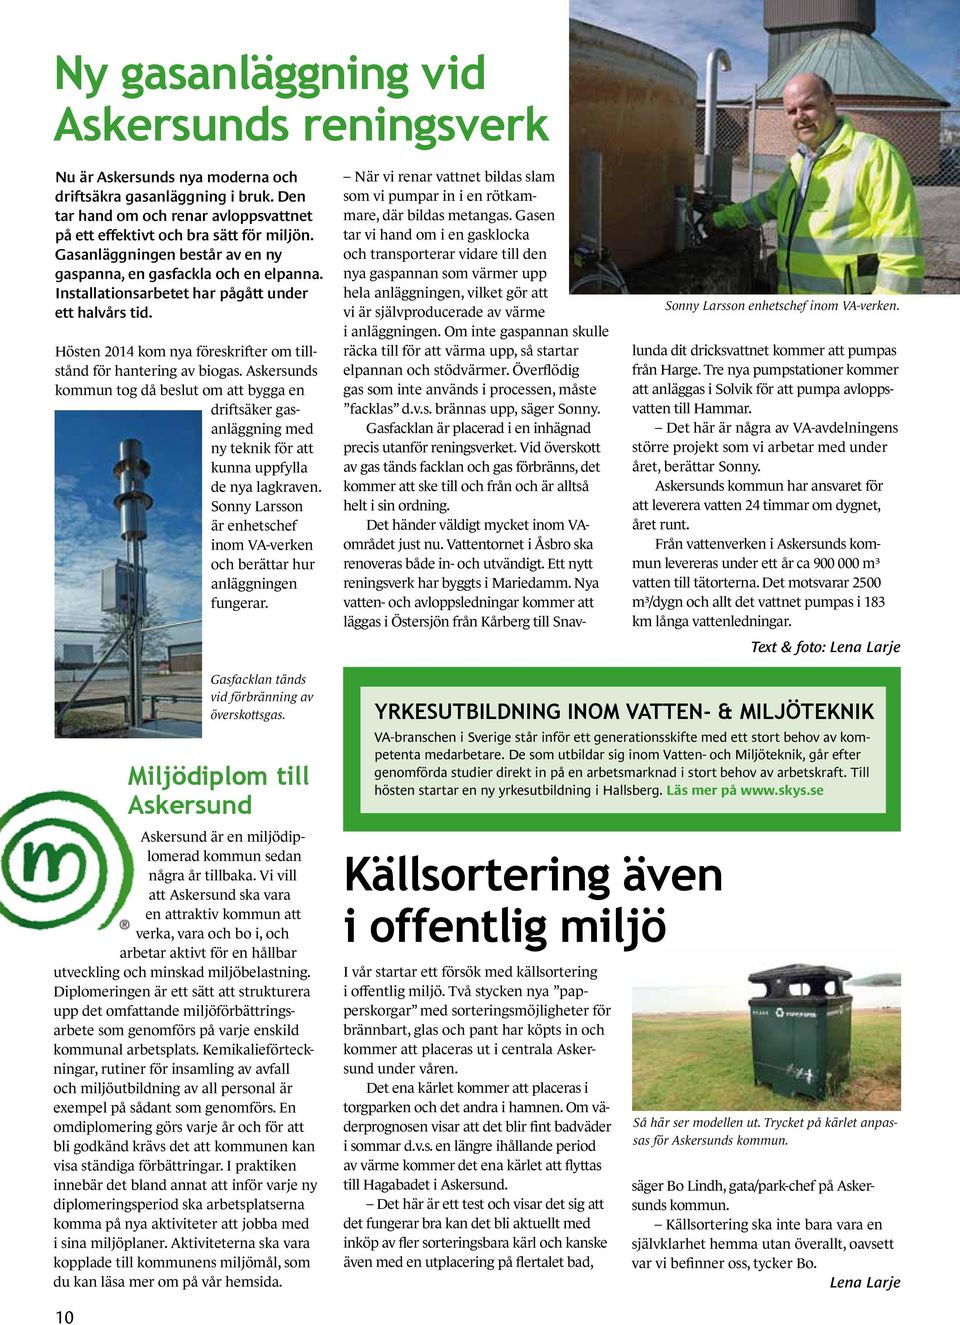 Installationsarbetet har pågått under ett halvårs tid. ogotypmanual rsion 4:2014 Hösten 2014 kom nya föreskrifter om tillstånd för hantering av biogas.